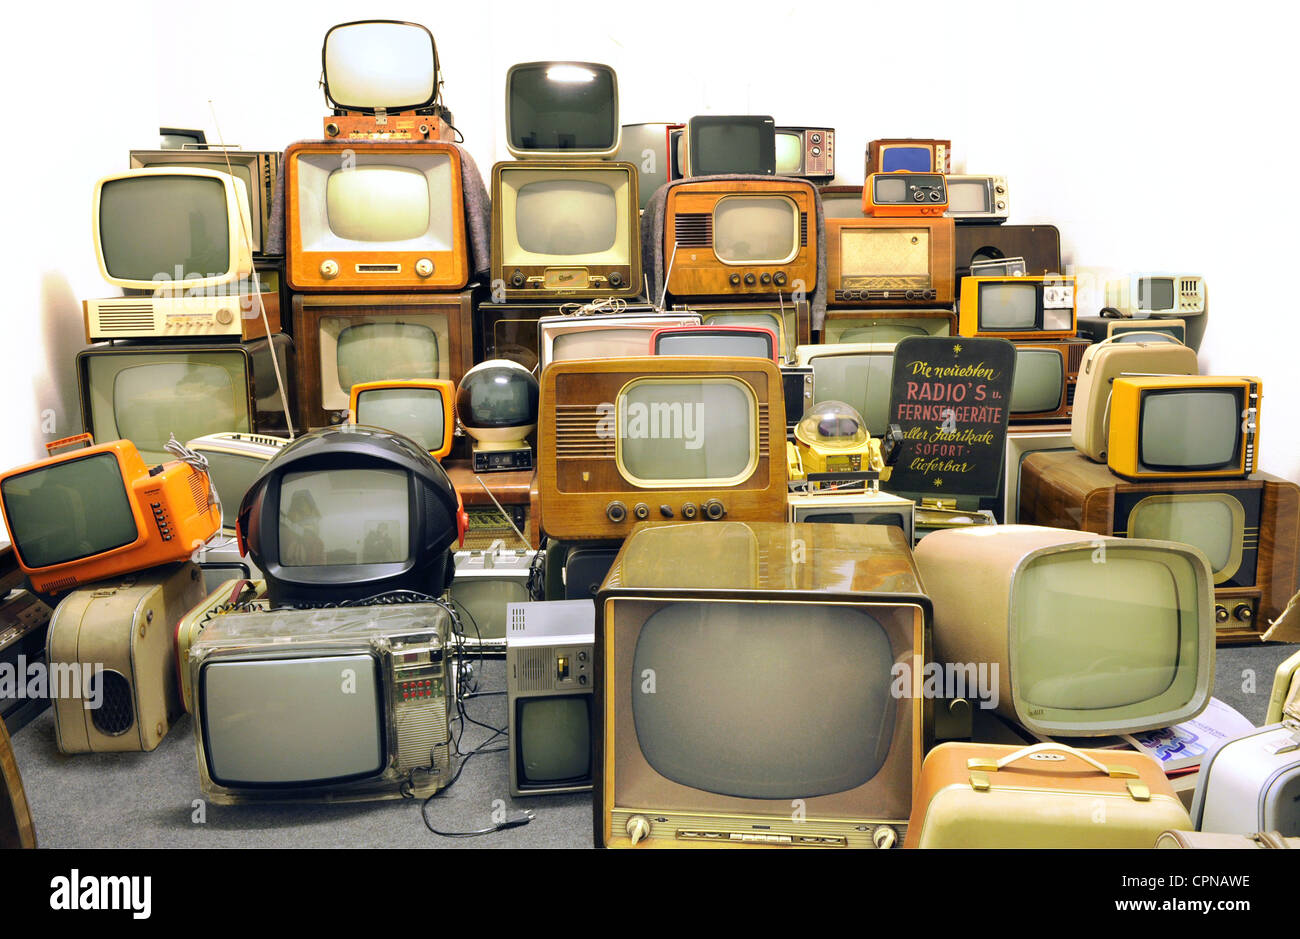 Broadcast, televisione, collezione di vecchi televisori del 50s, 60s e 70s, Monaco di Baviera, Germania, Additional-Rights-Clearance-Info-Not-Available Foto Stock